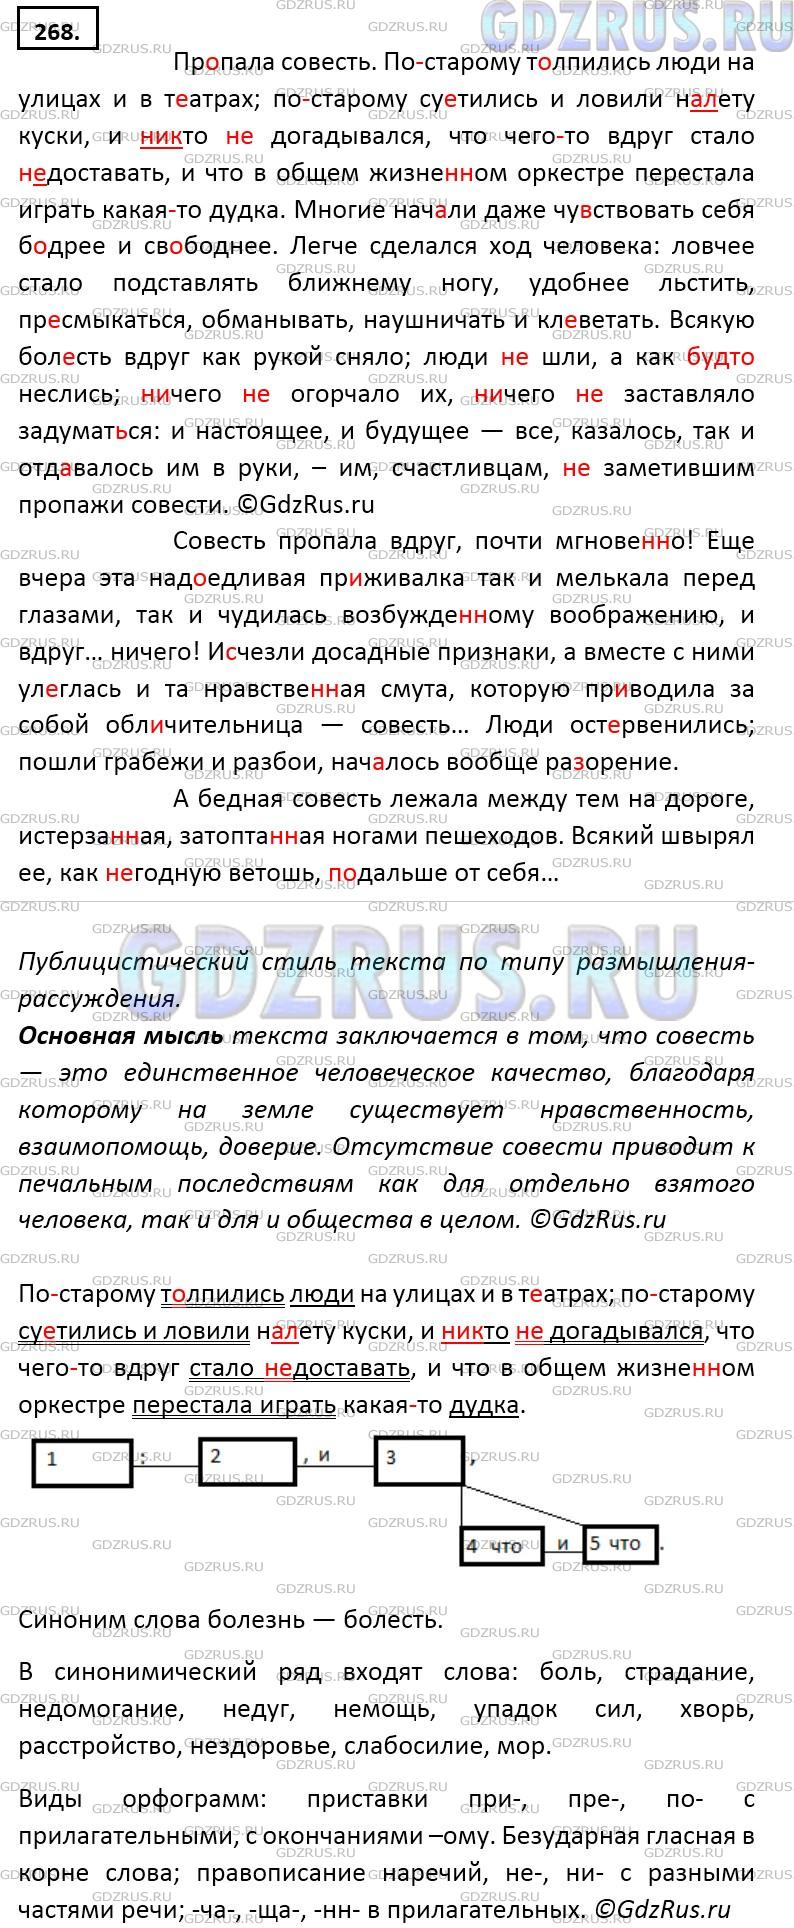 Фото решения 5: ГДЗ по Русскому языку 9 класса: Ладыженская Упр. 268